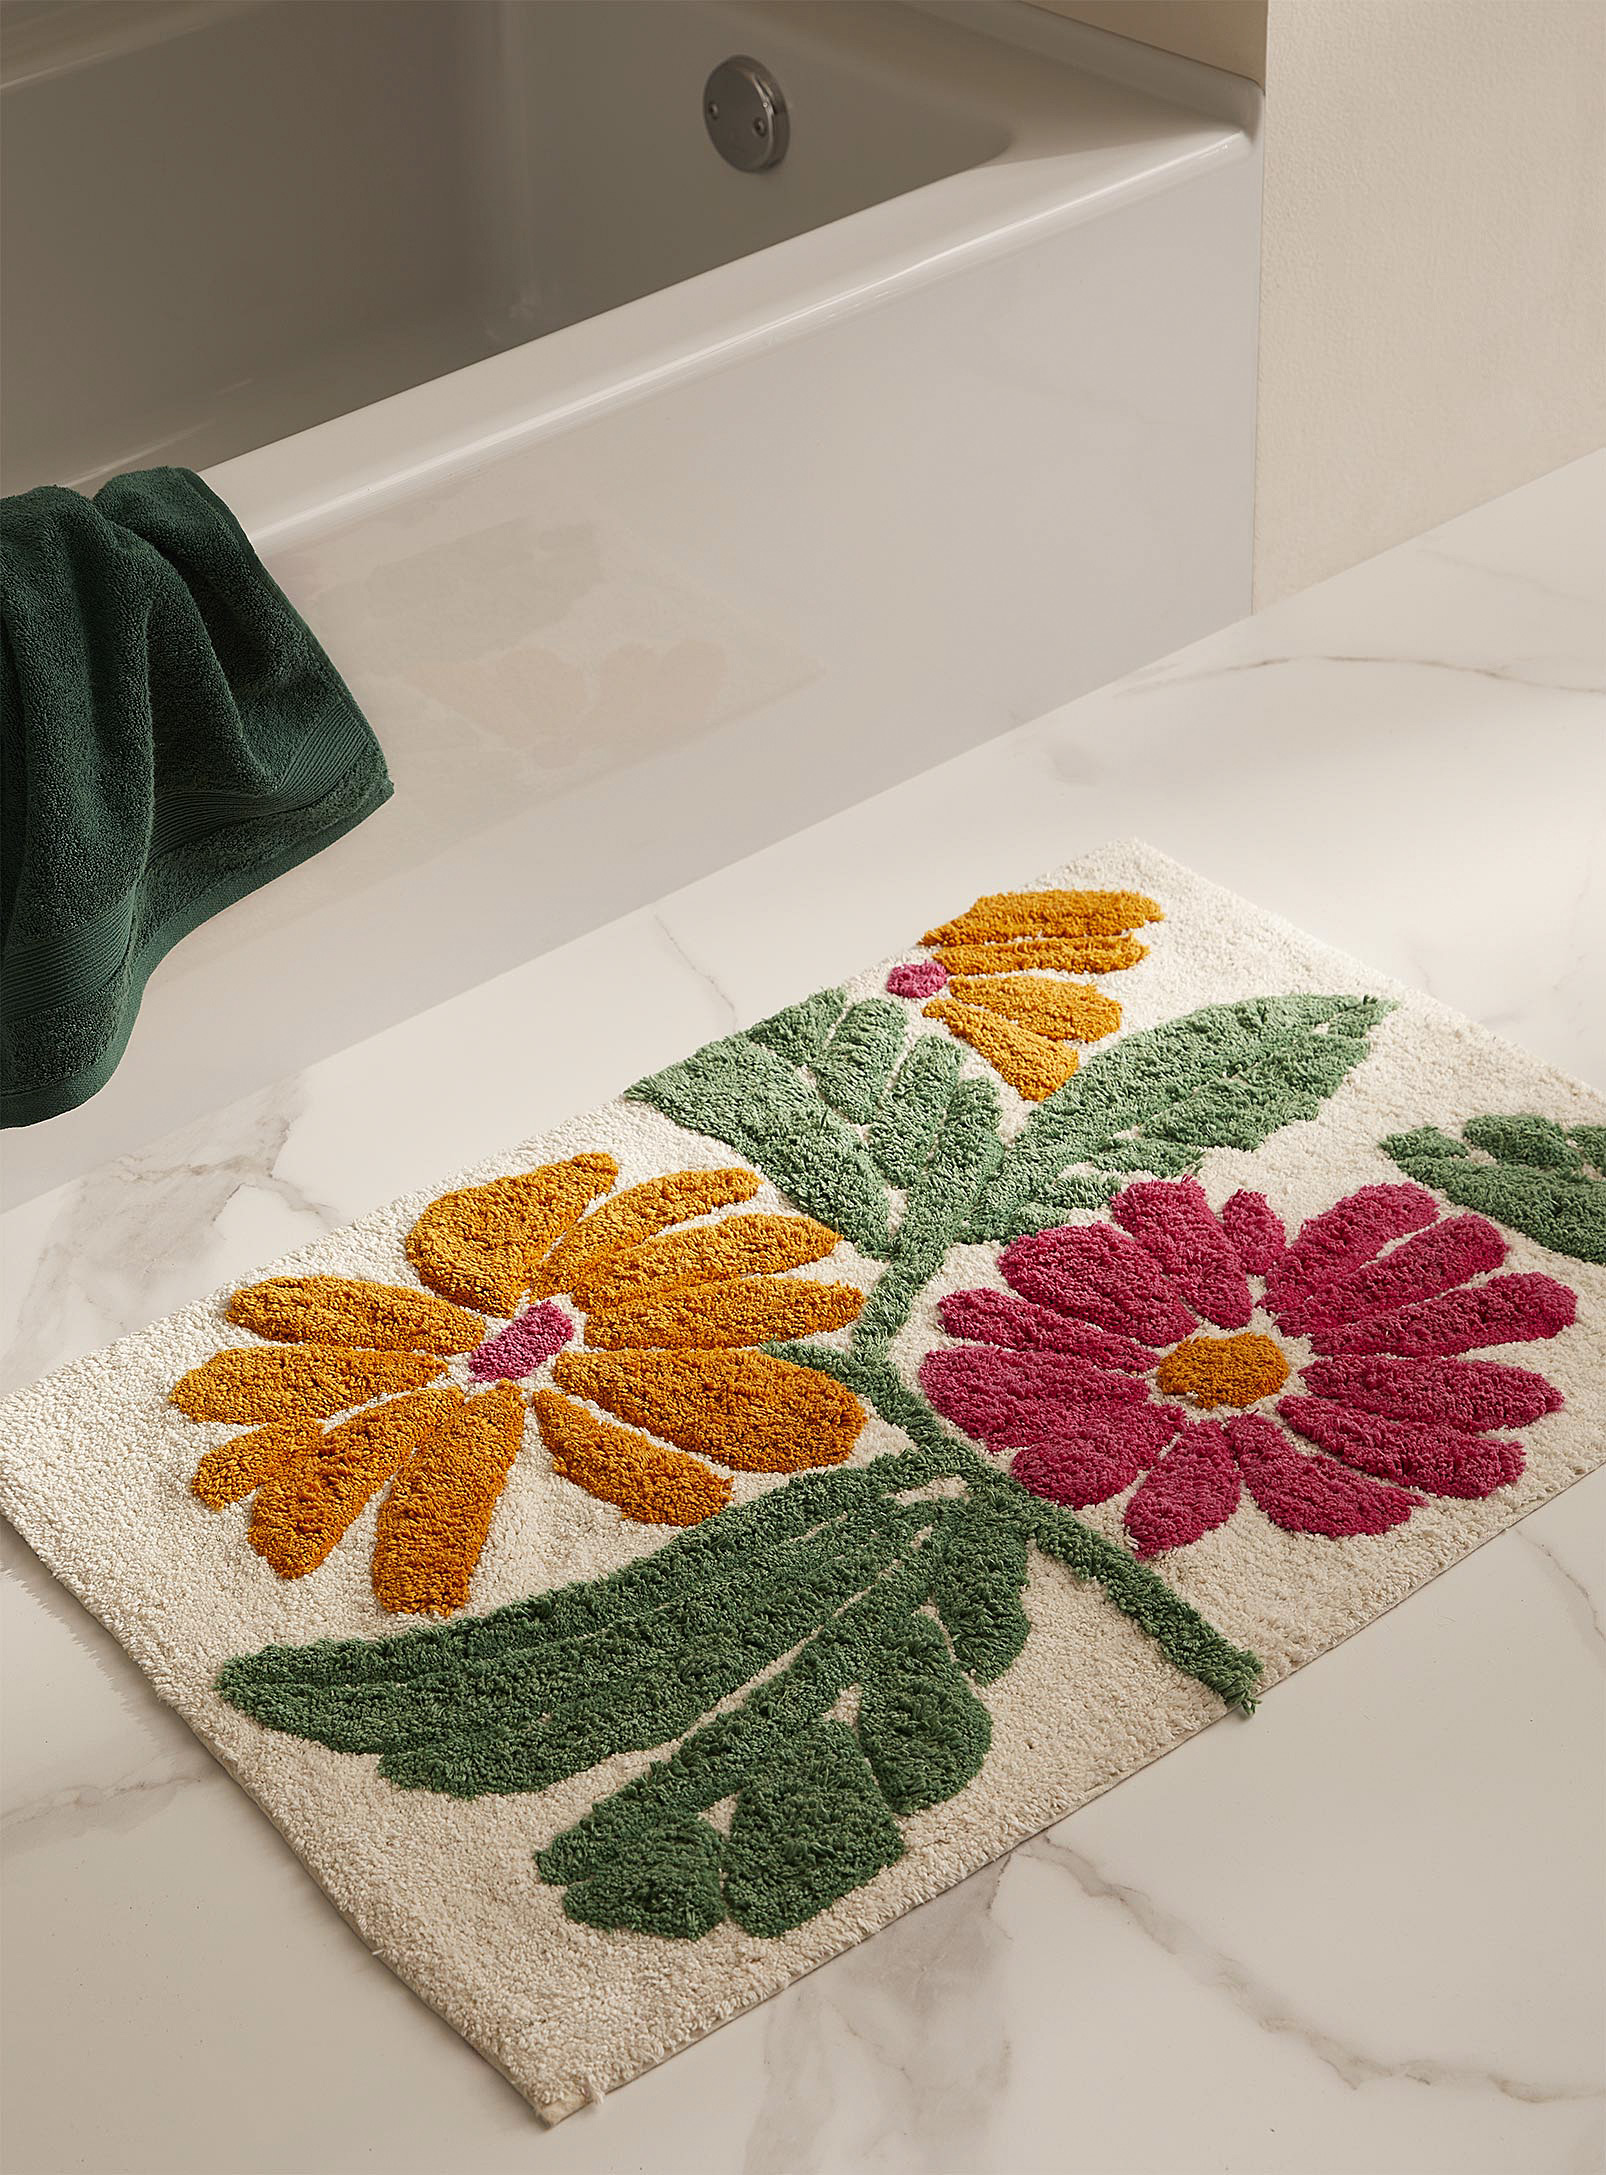 Simons Maison - Le tapis de bain coton recyclé fleurs colorées 50 x 80 cm